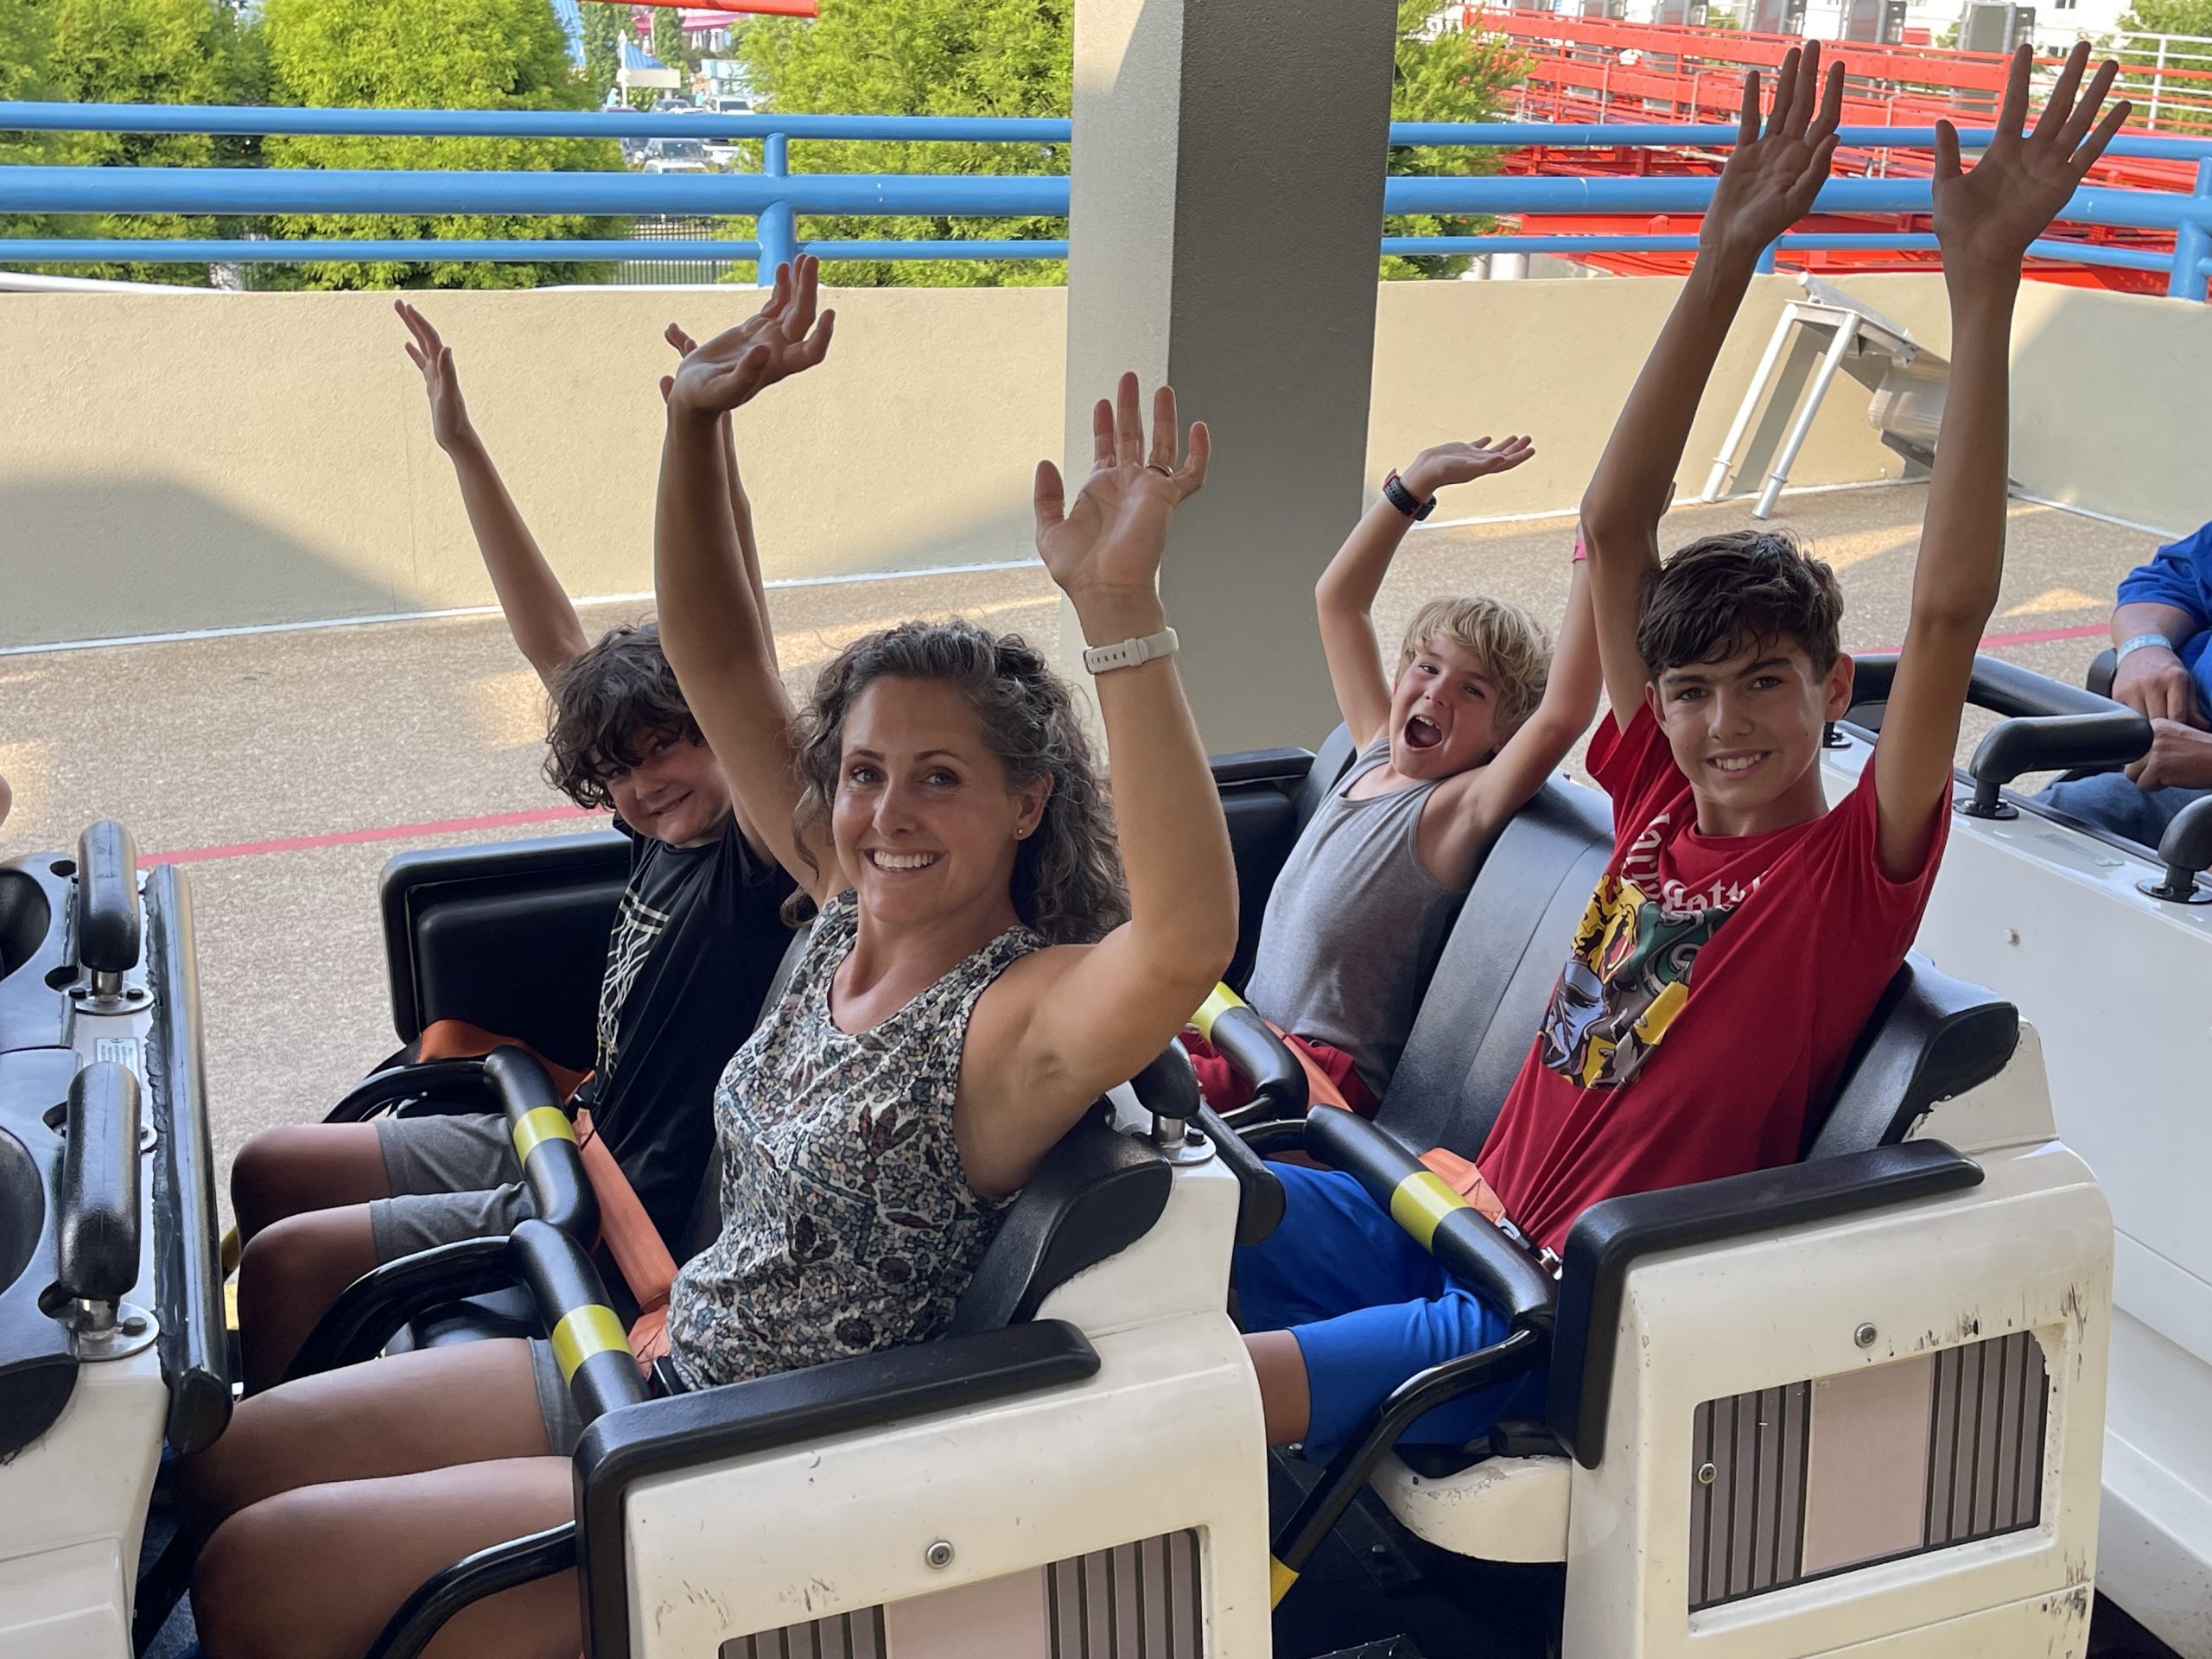 Our Family Review Of Cedar Point Sandusky, Ohio